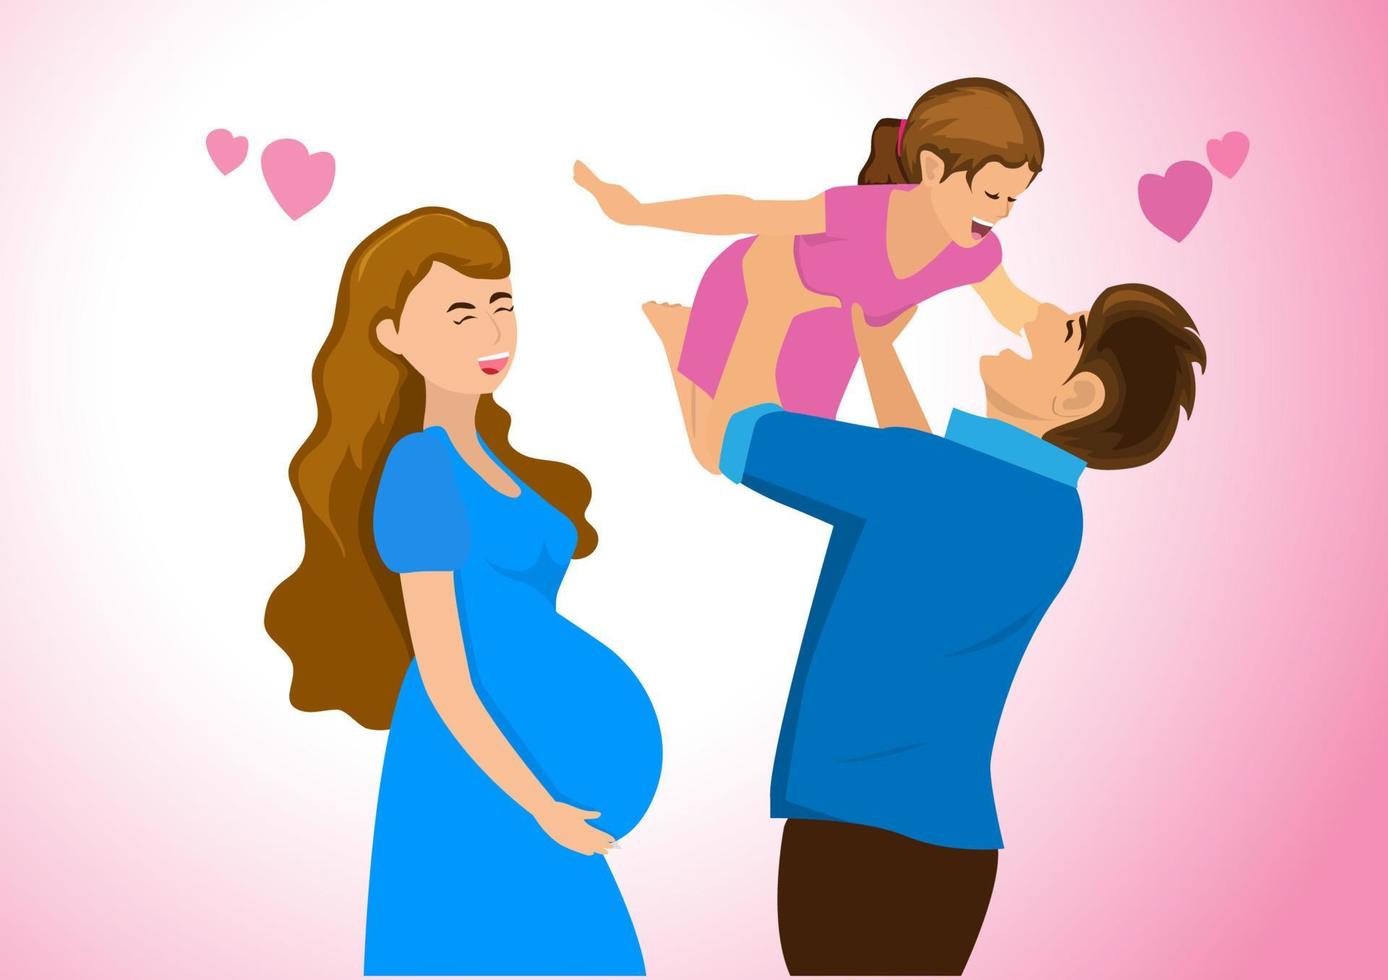 familia feliz en casa padre jugando con hija madre embarazada de pie sonriendo felizmente seguro. vector de ilustración de dibujos animados de estilo plano